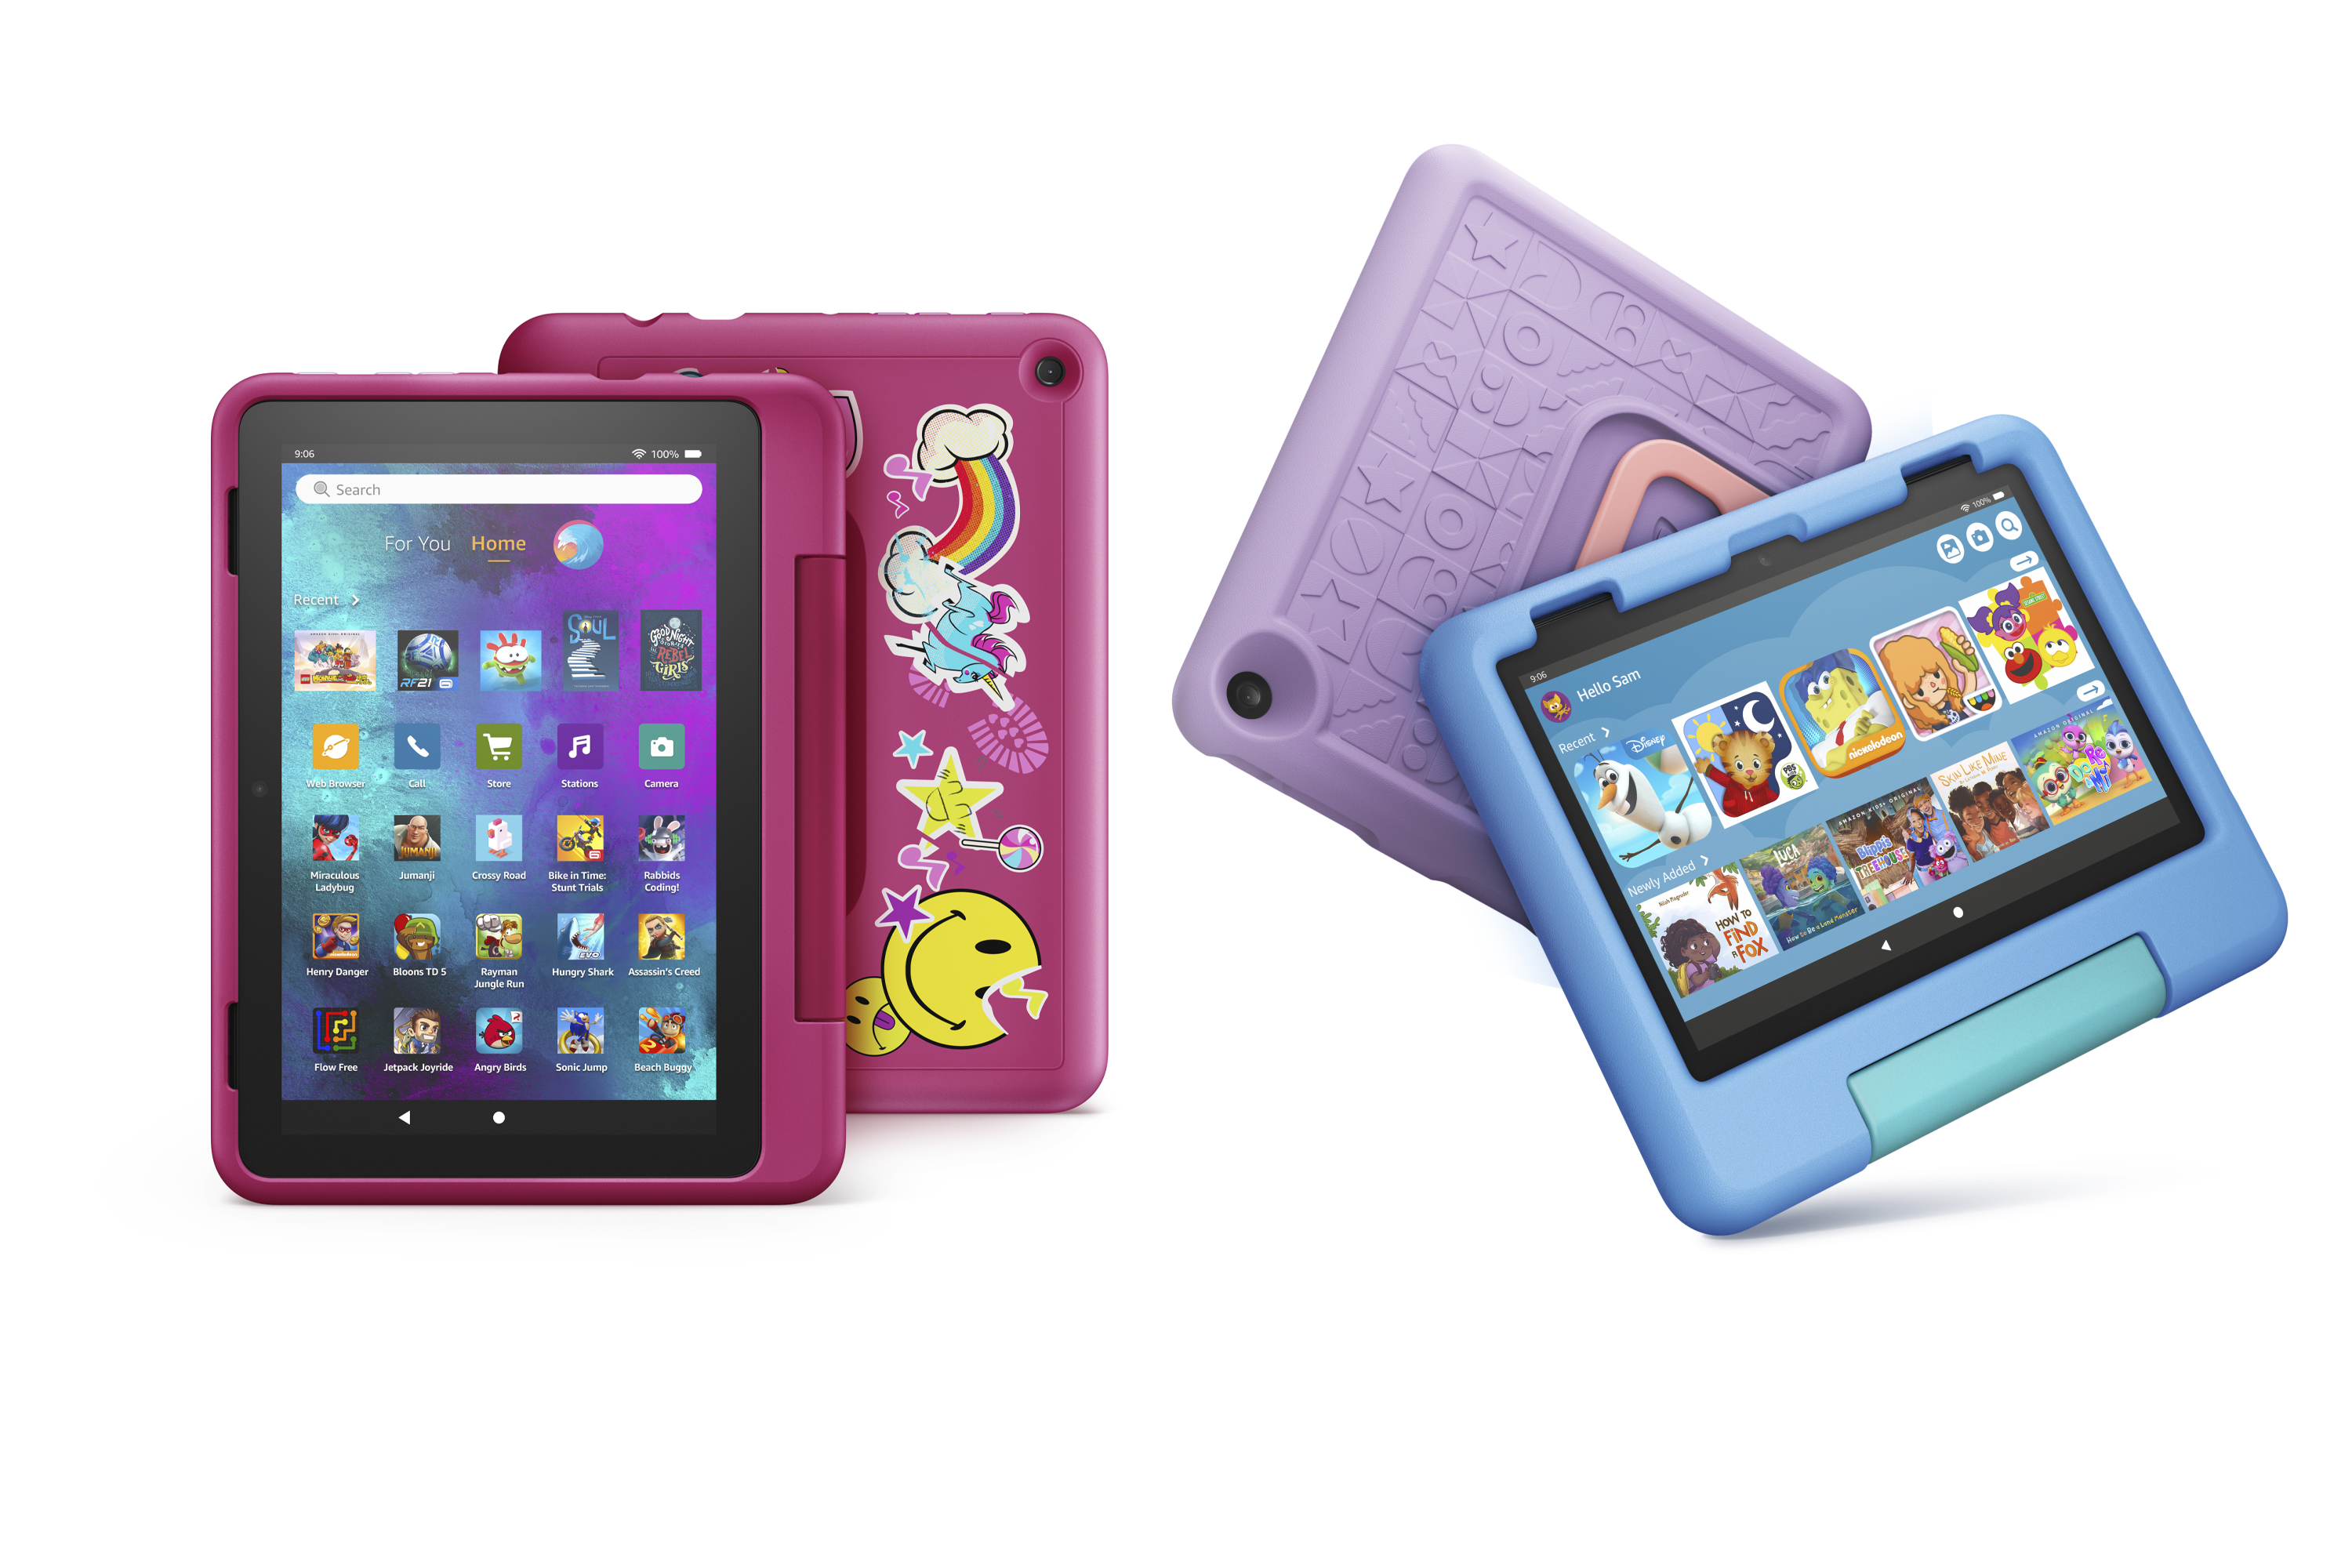 Os tablets Amazon Fire HD 8 Kids e HD 8 Kids Pro lado a lado.